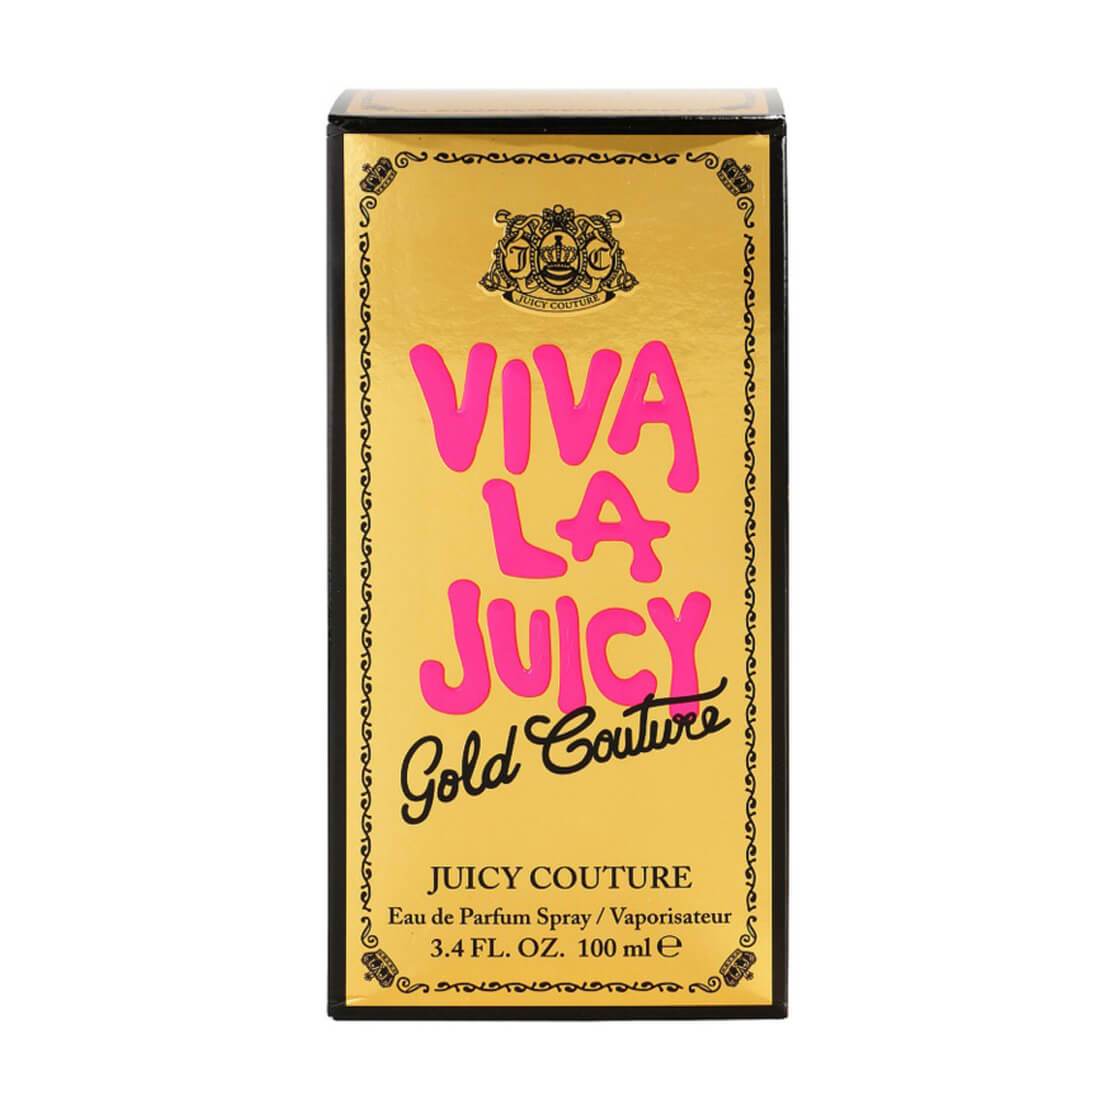 Juicy Couture Viva La Juicy Gold Couture Eau De Parfum - 100ml